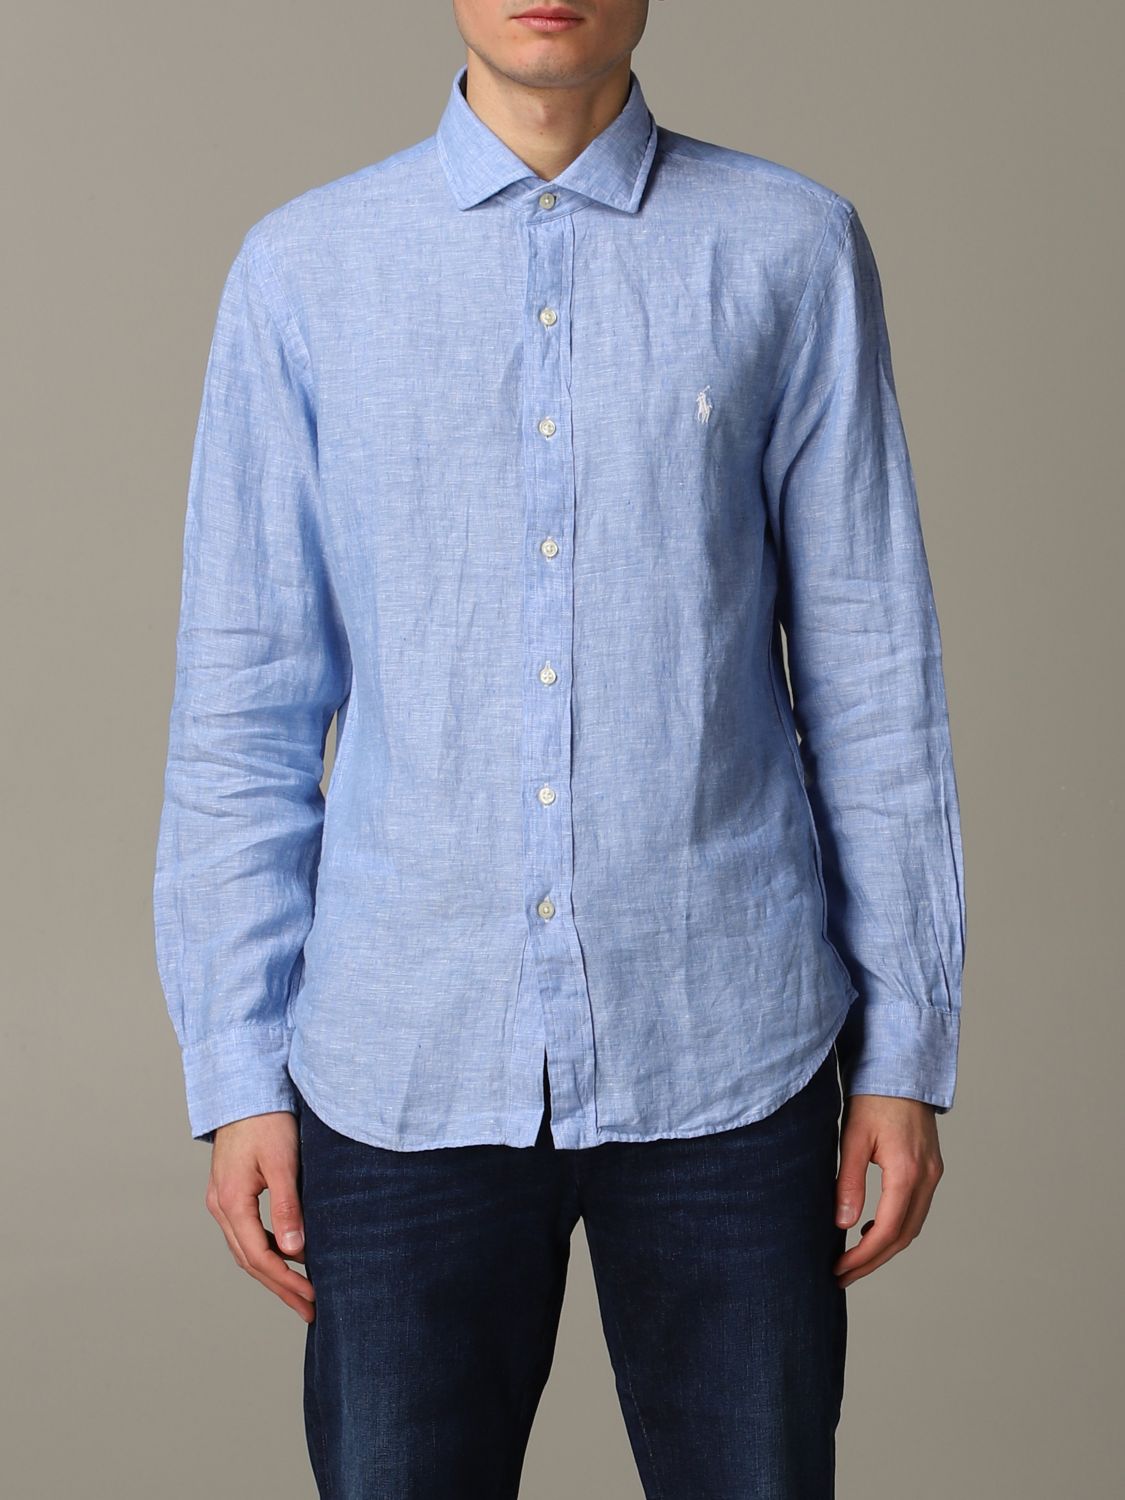 Shirt Polo Ralph Lauren: Polo Ralph Lauren shirt for men gnawed blue 1